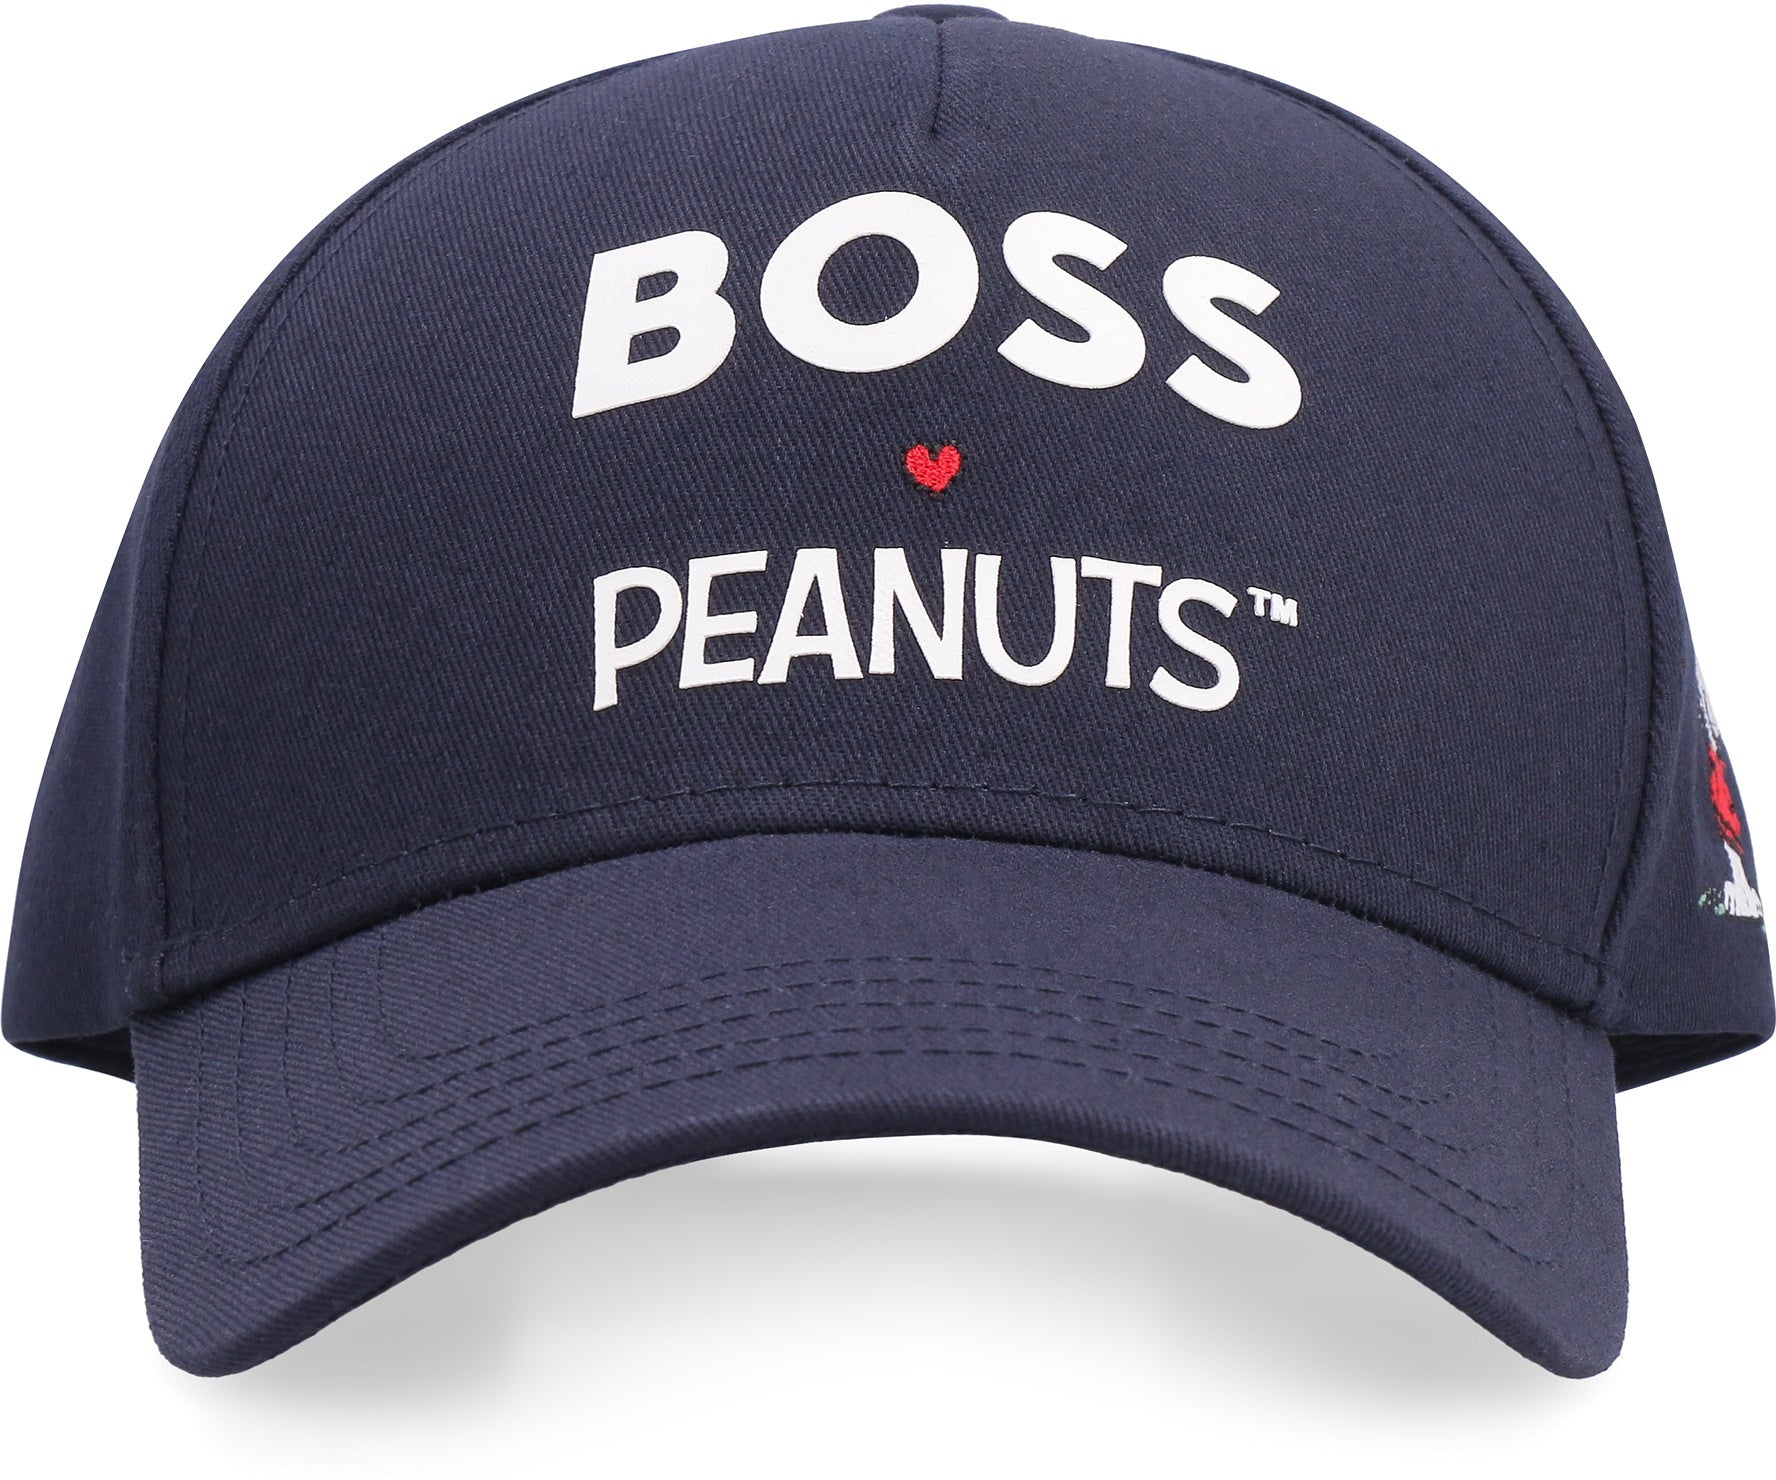 BOSS - BOSS x PEANUTS - Corner blue The - Printed cap baseball